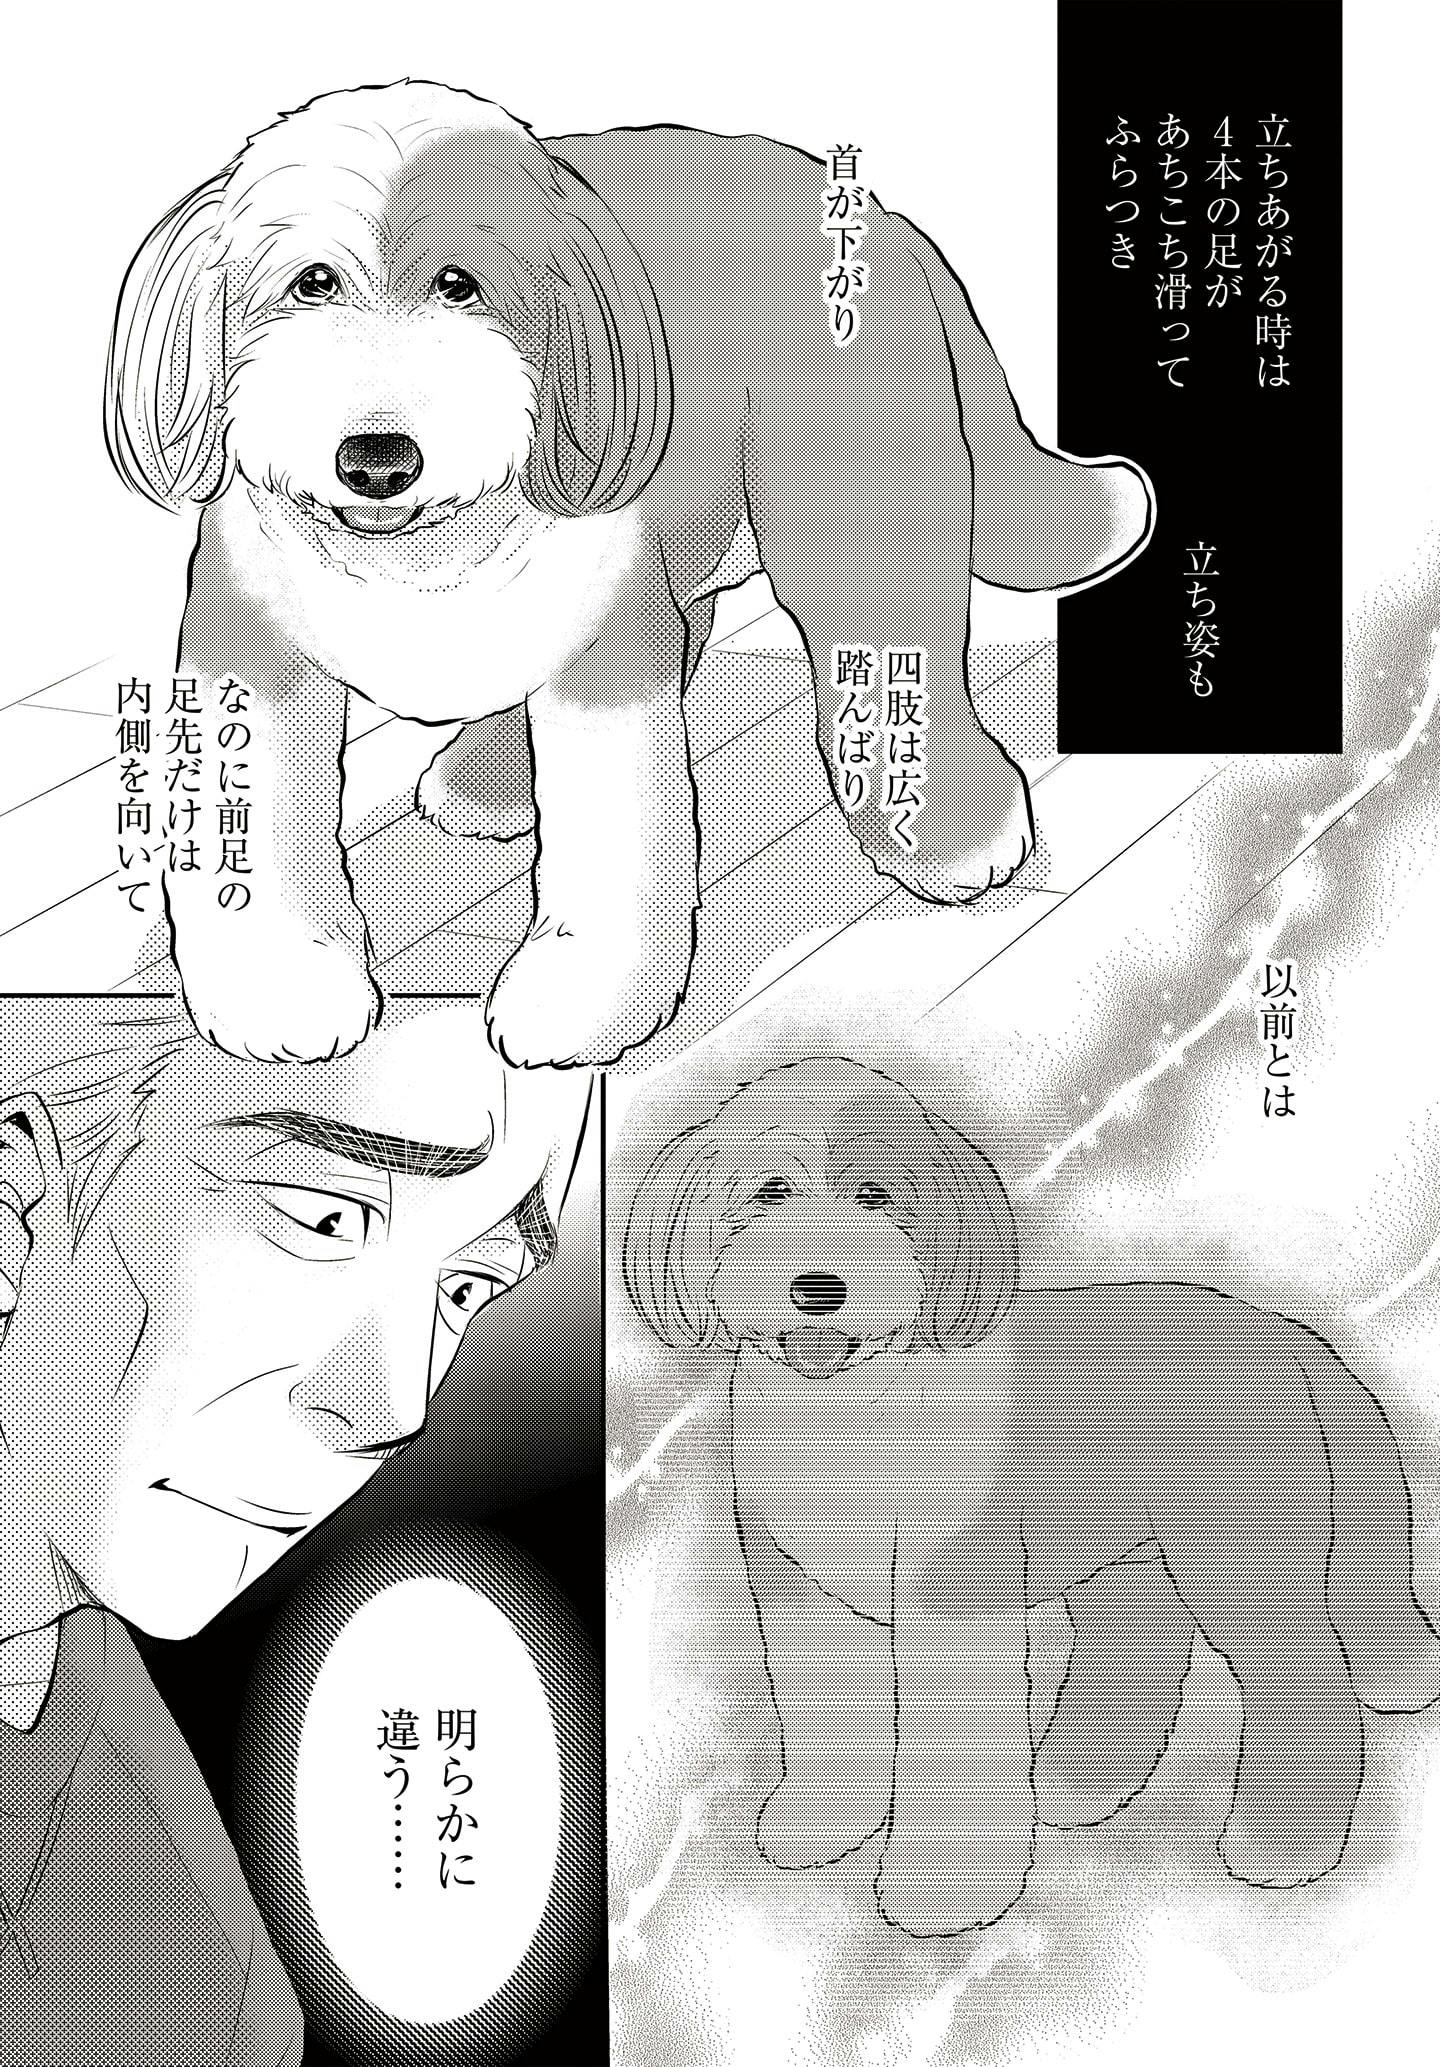 ドッグトレーニング漫画『DOG SIGNAL』34話目　4/4